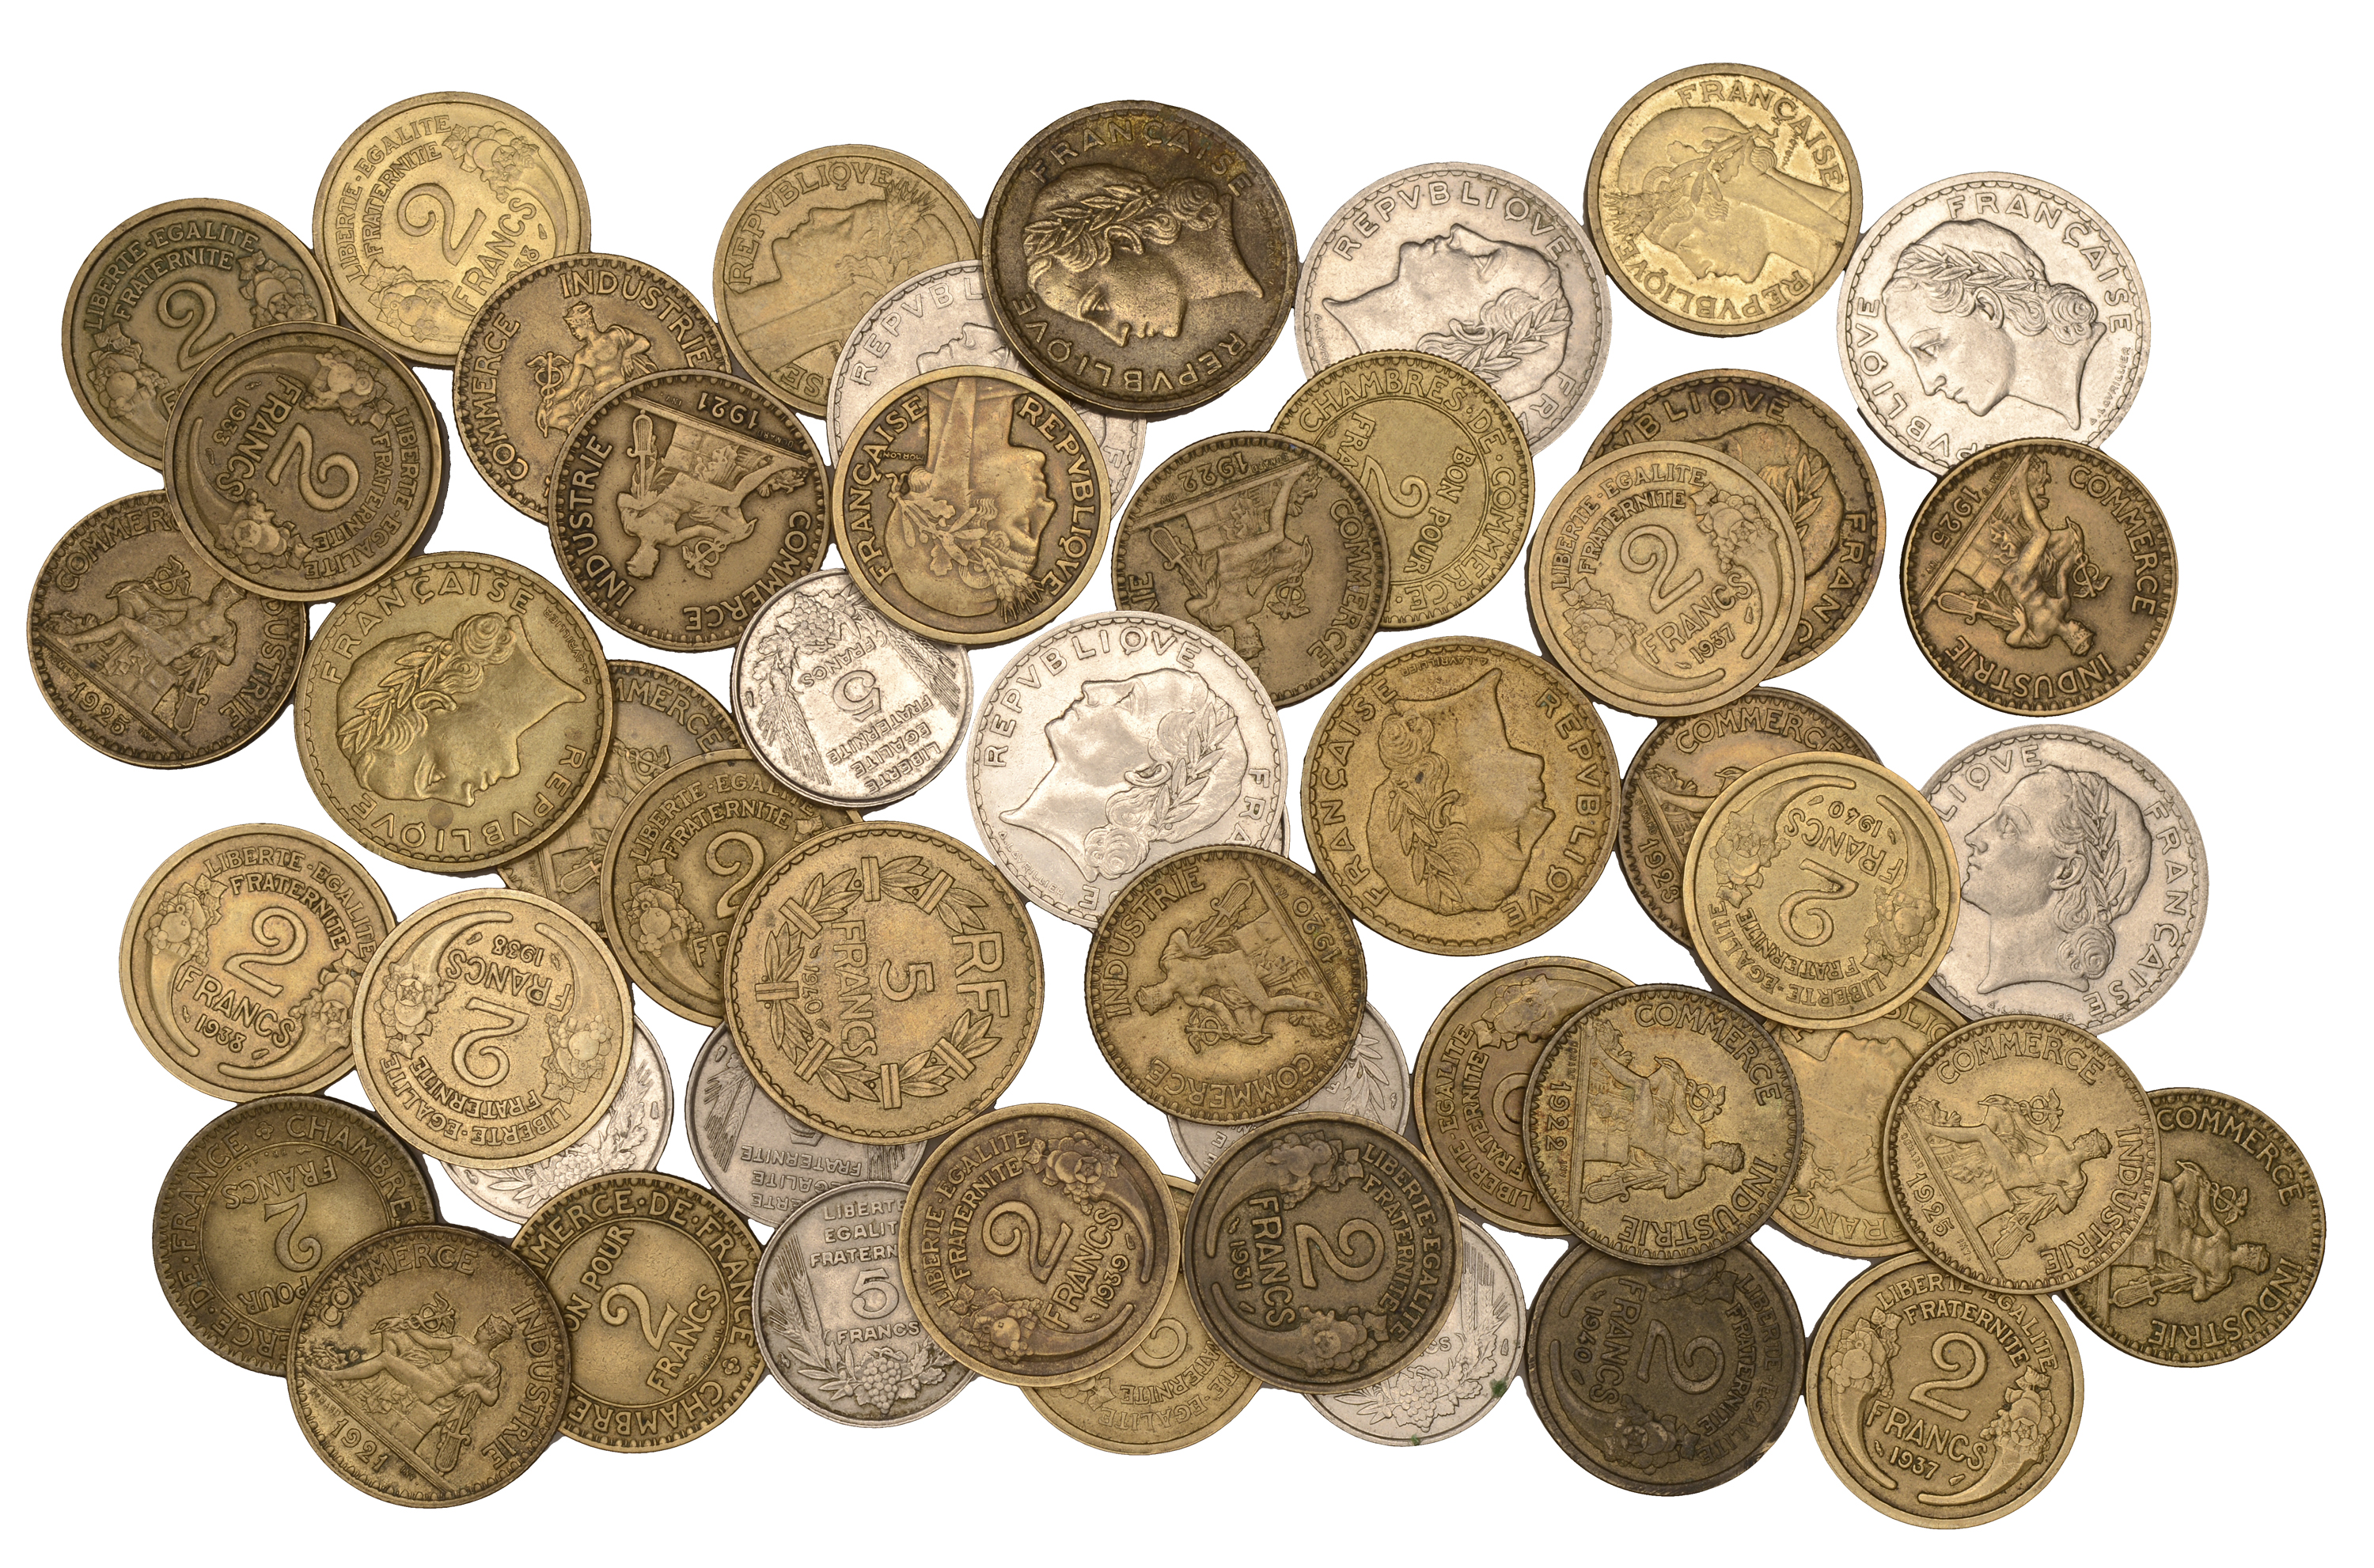 France, Third Republic (1871-1940), 5 Francs (16), 1933 (10), 1935 (2), 1938 (2), 1940 (4) (...